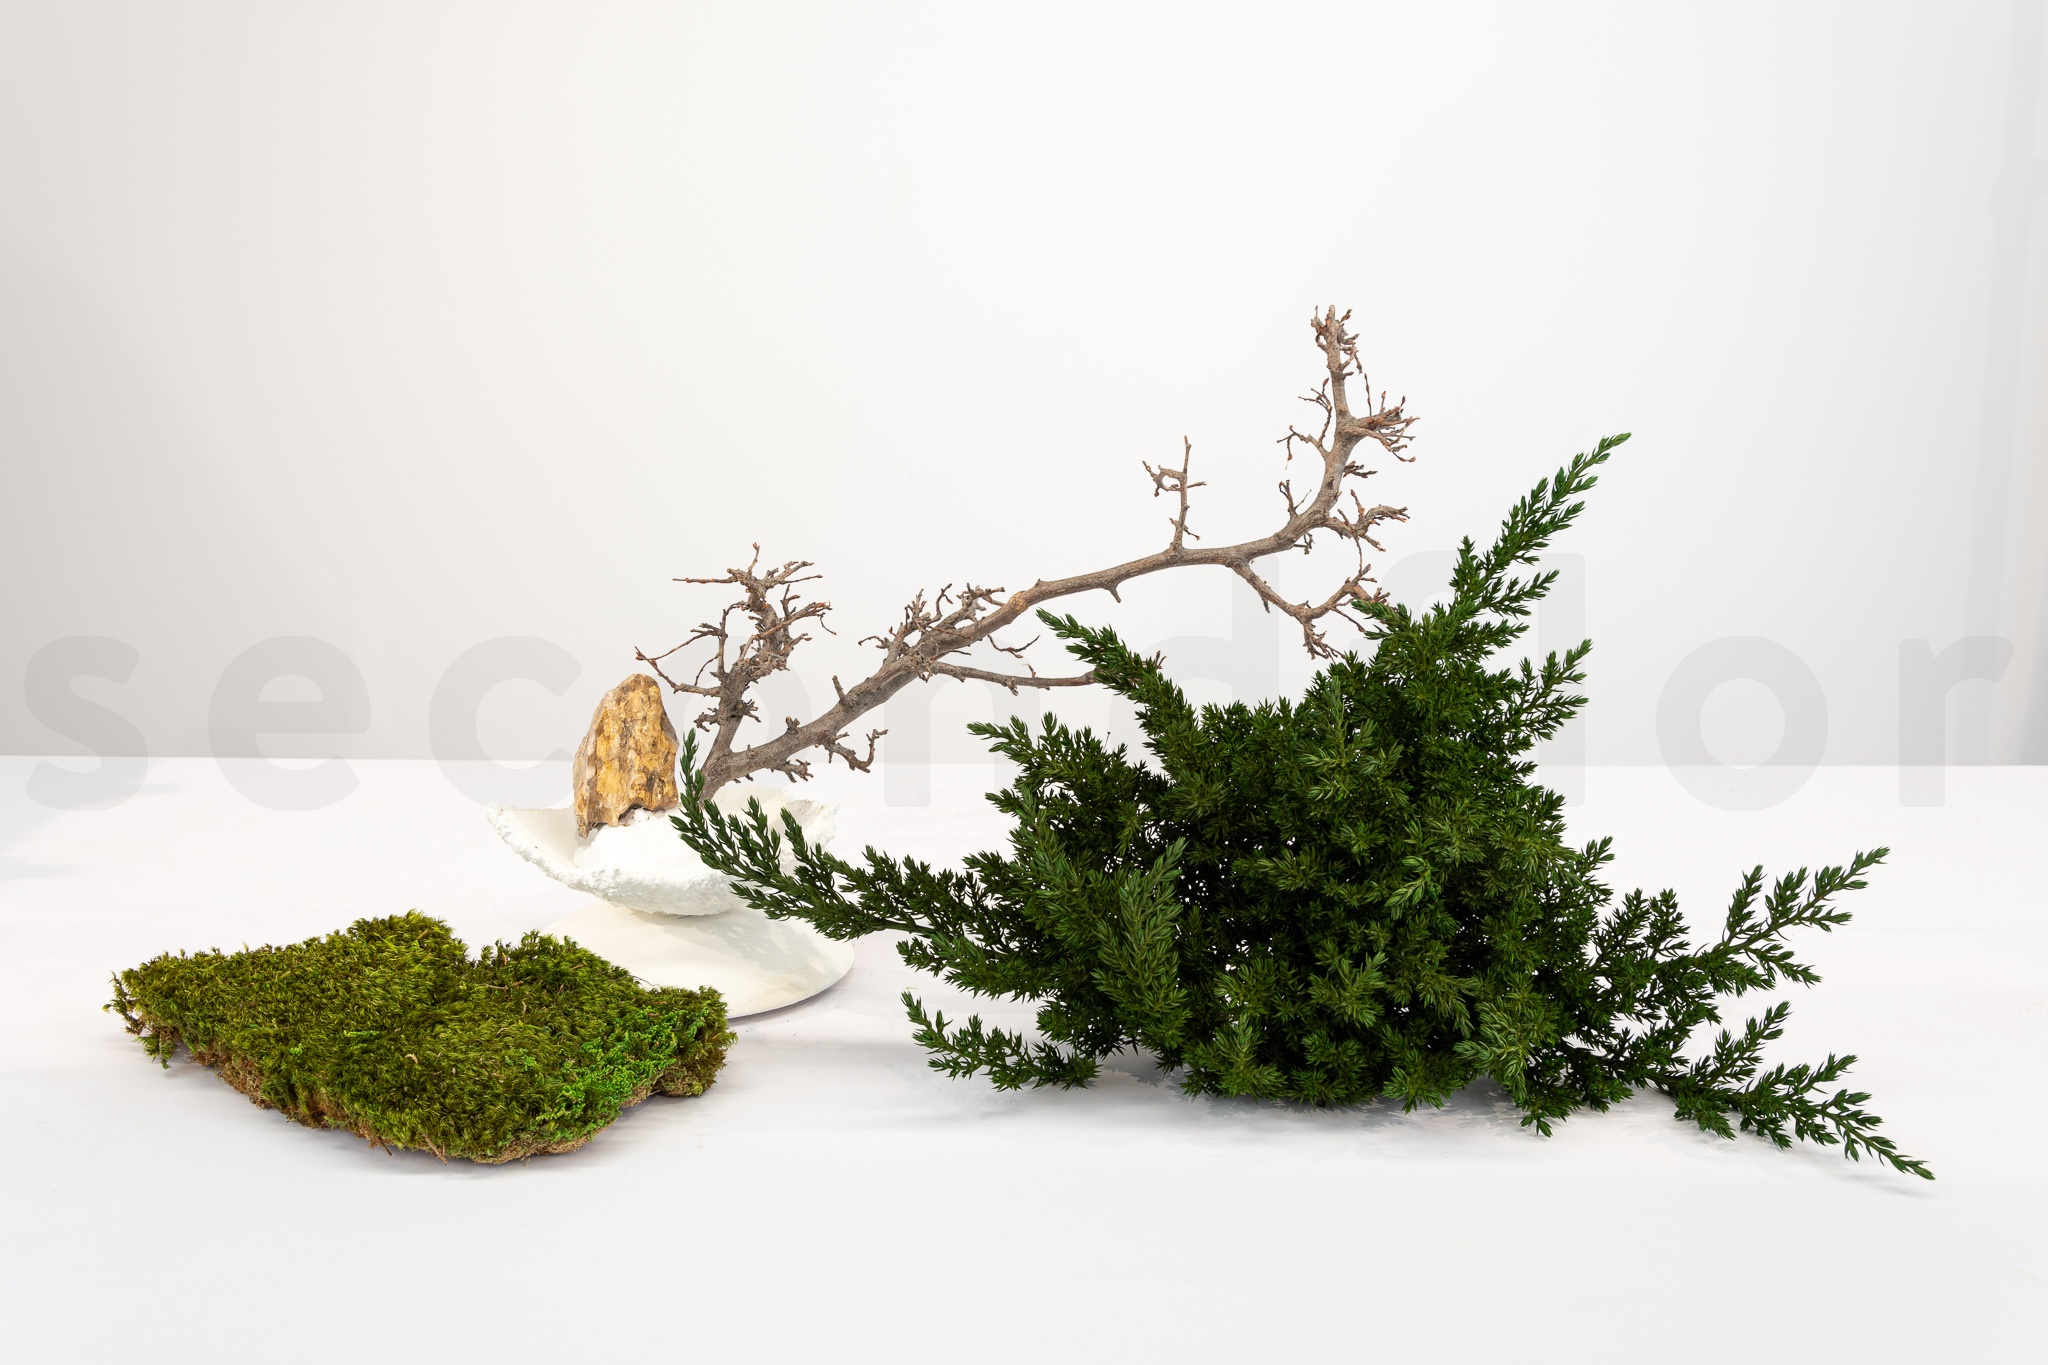 materiel necaissaire pour le works juniperus branche mousse